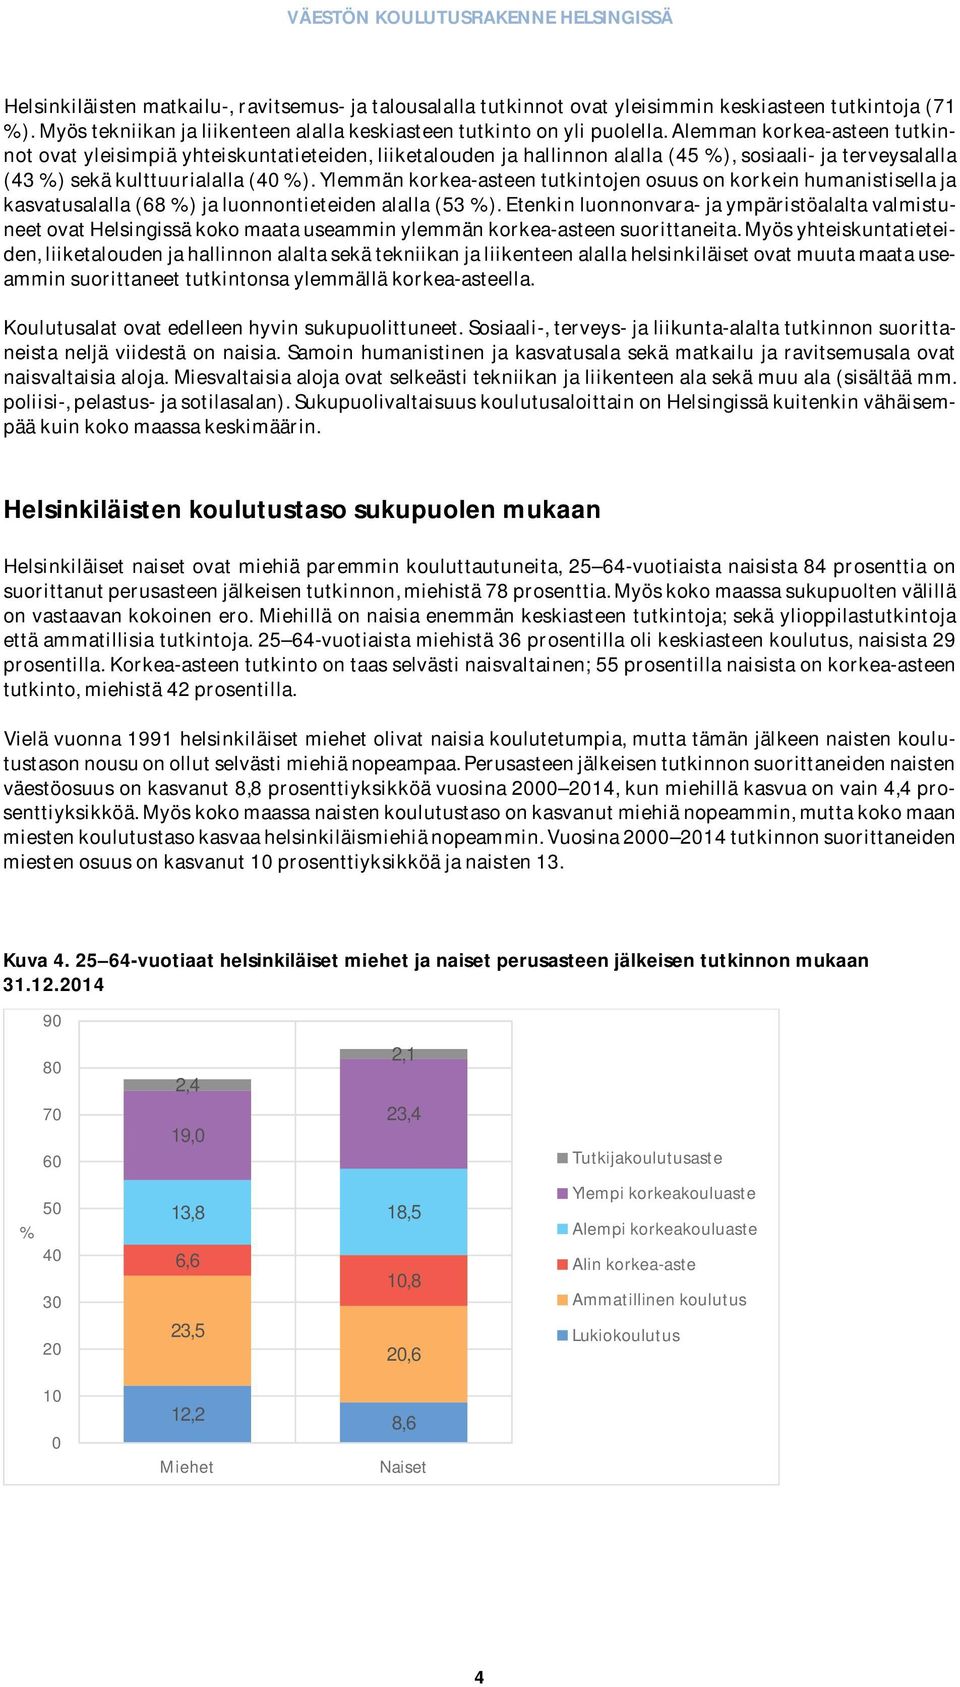 Ylemmänkorkea-asteentutkintojenosuusonkorkeinhumanistisellaja kasvatusalalla(68%)jaluonnontieteidenalalla(53%).